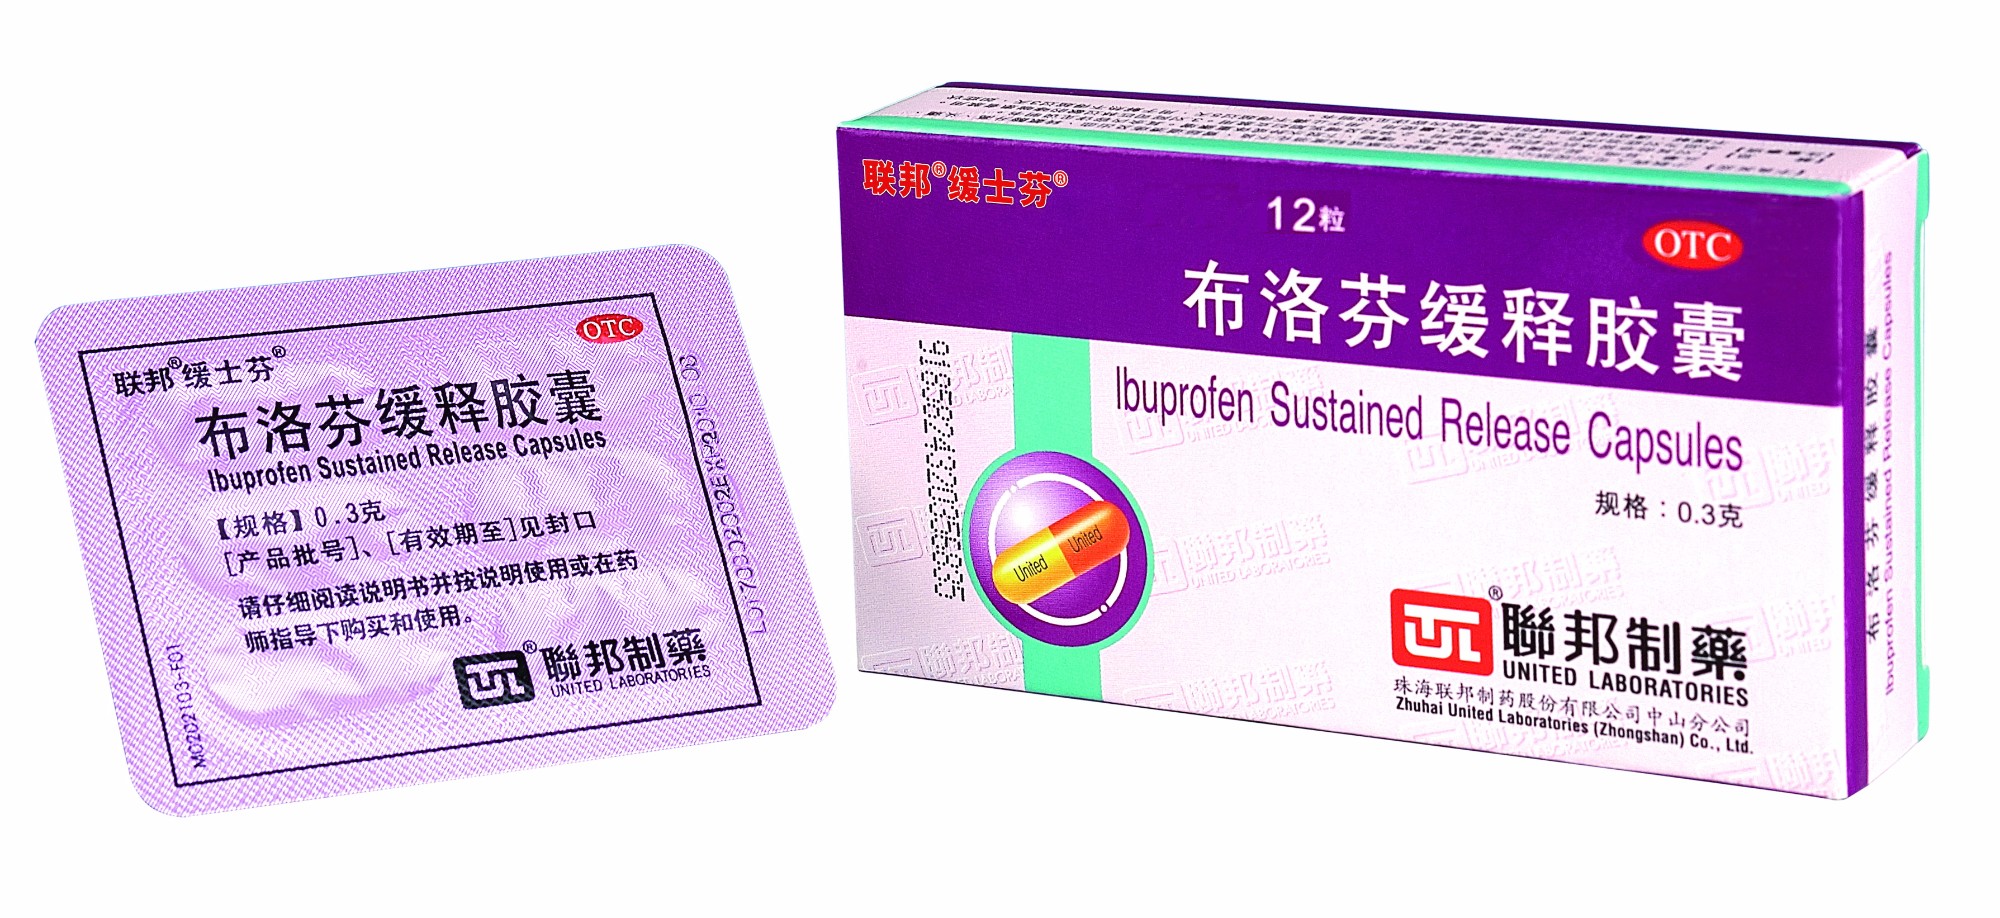  Ibuprofen Sustained Release Capsules